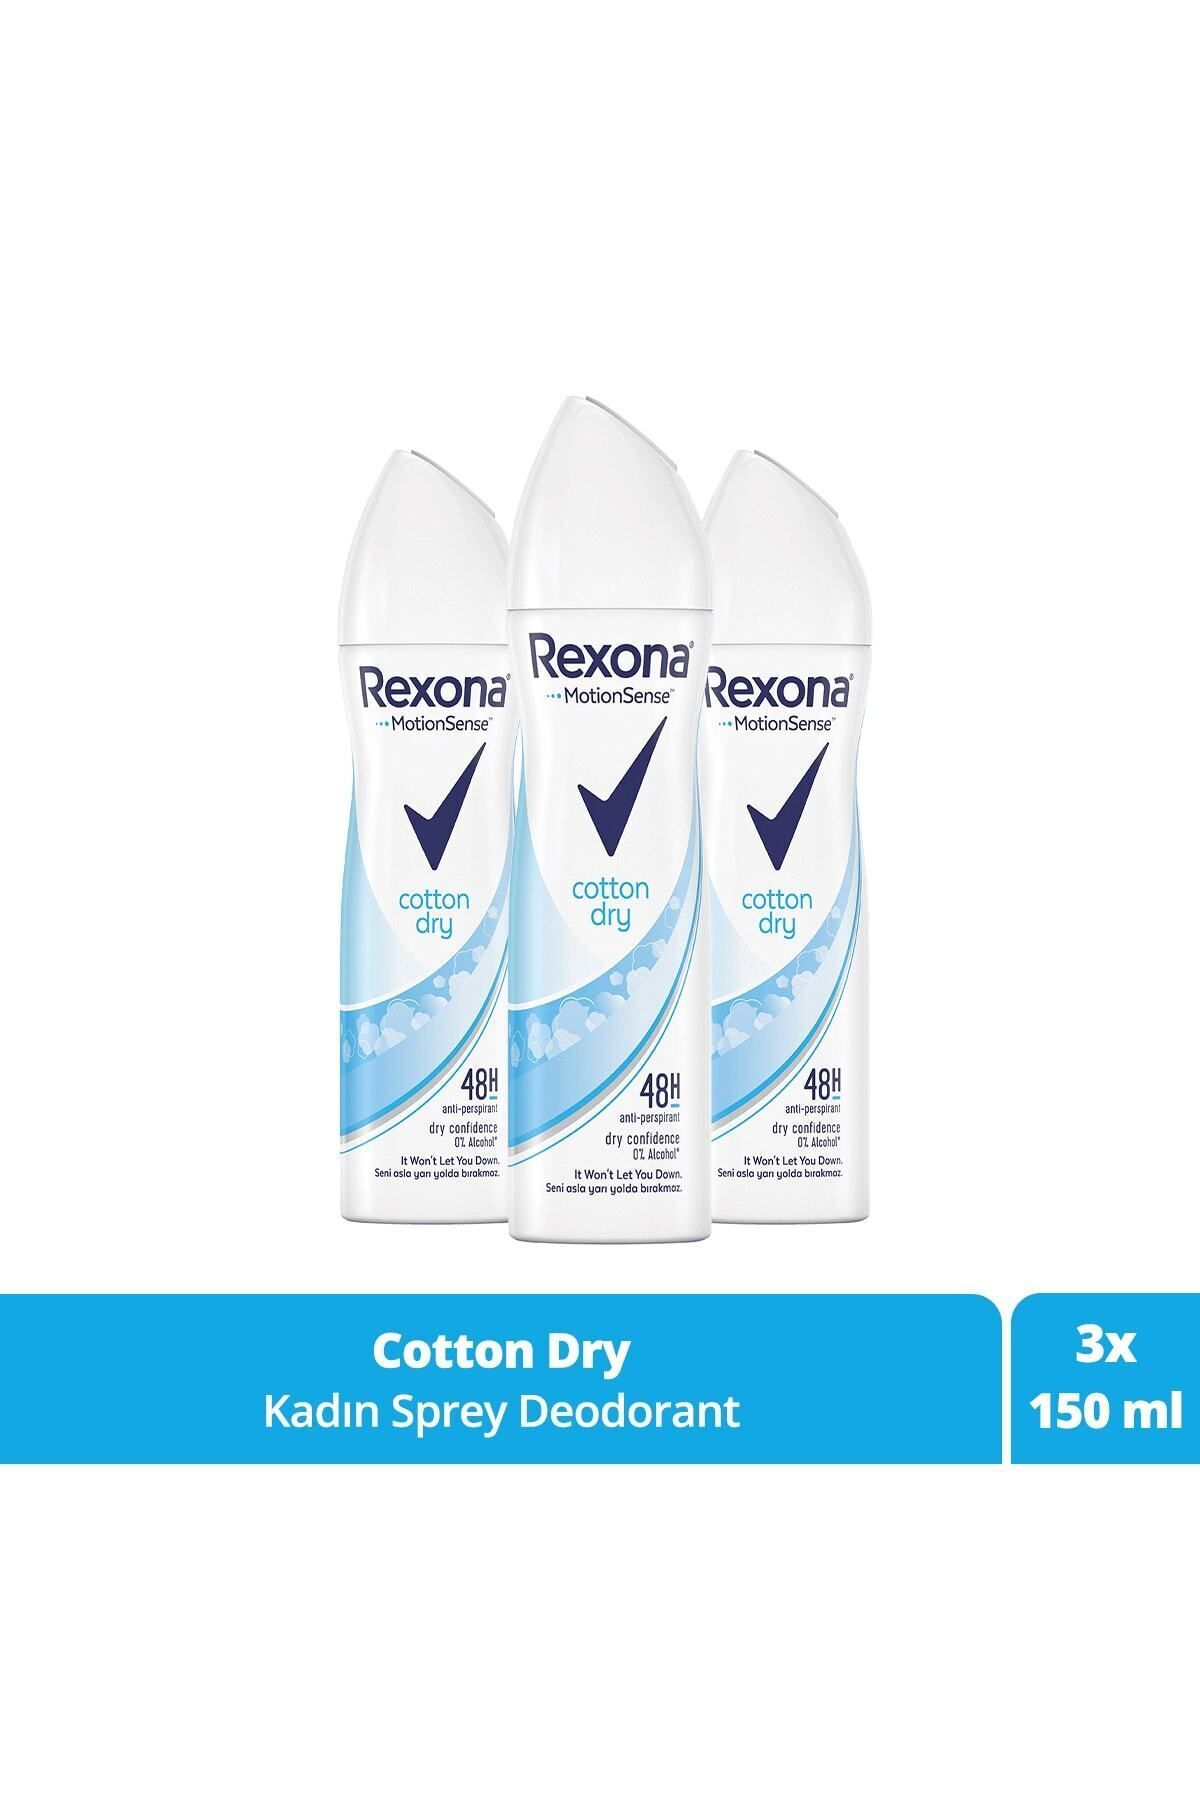 Rexona Kadın Sprey Deodorant Cotton Dry 150 ml x3 Adet